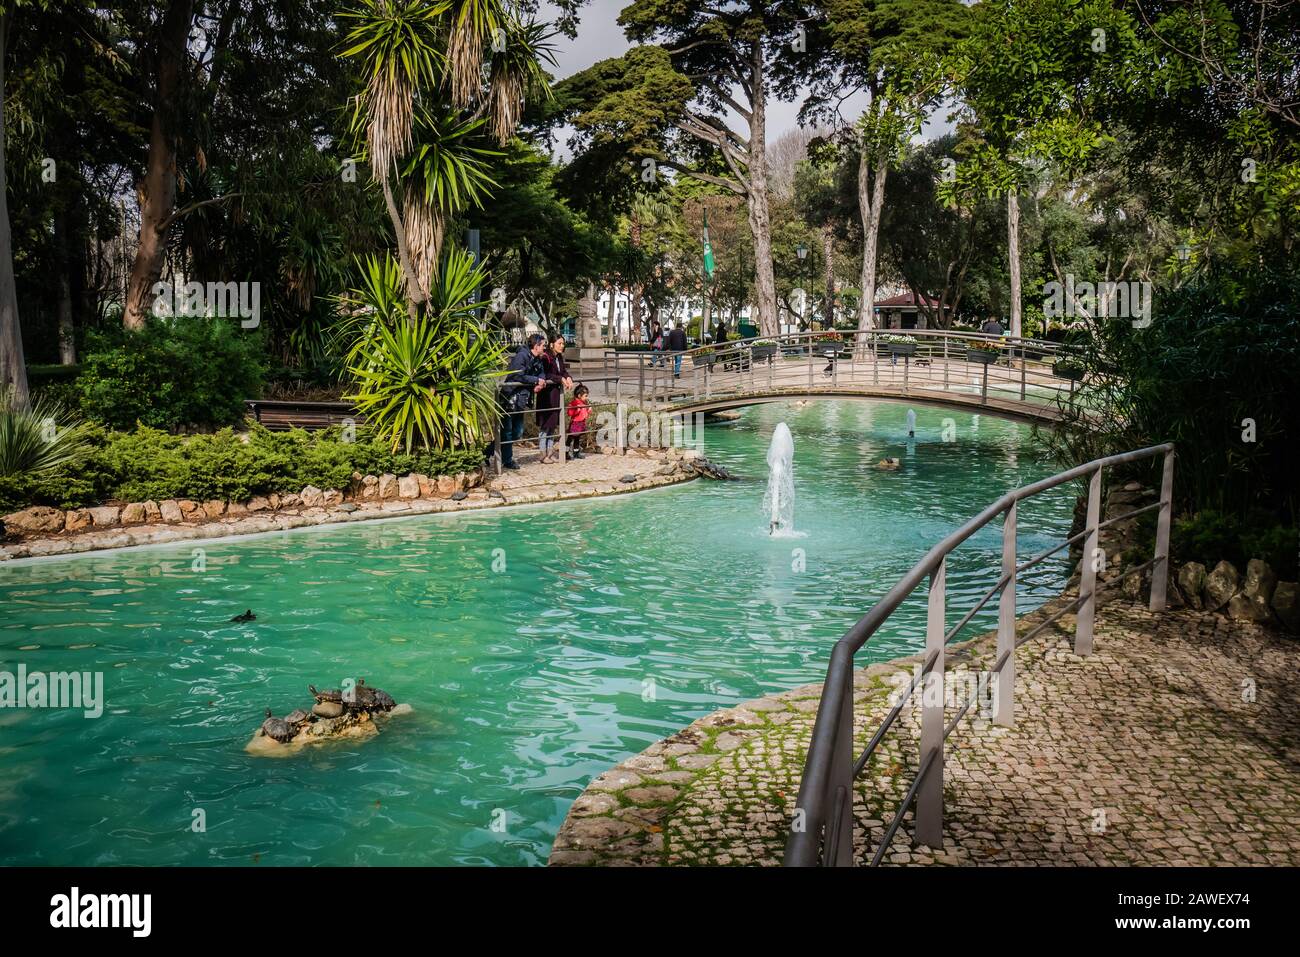 Parque Marechal Carmona ist ein familienfreundlicher öffentlicher Park in Cascais mit Enten Schildkröten in einem Teich sowie Gärten und Cafés Stockfoto